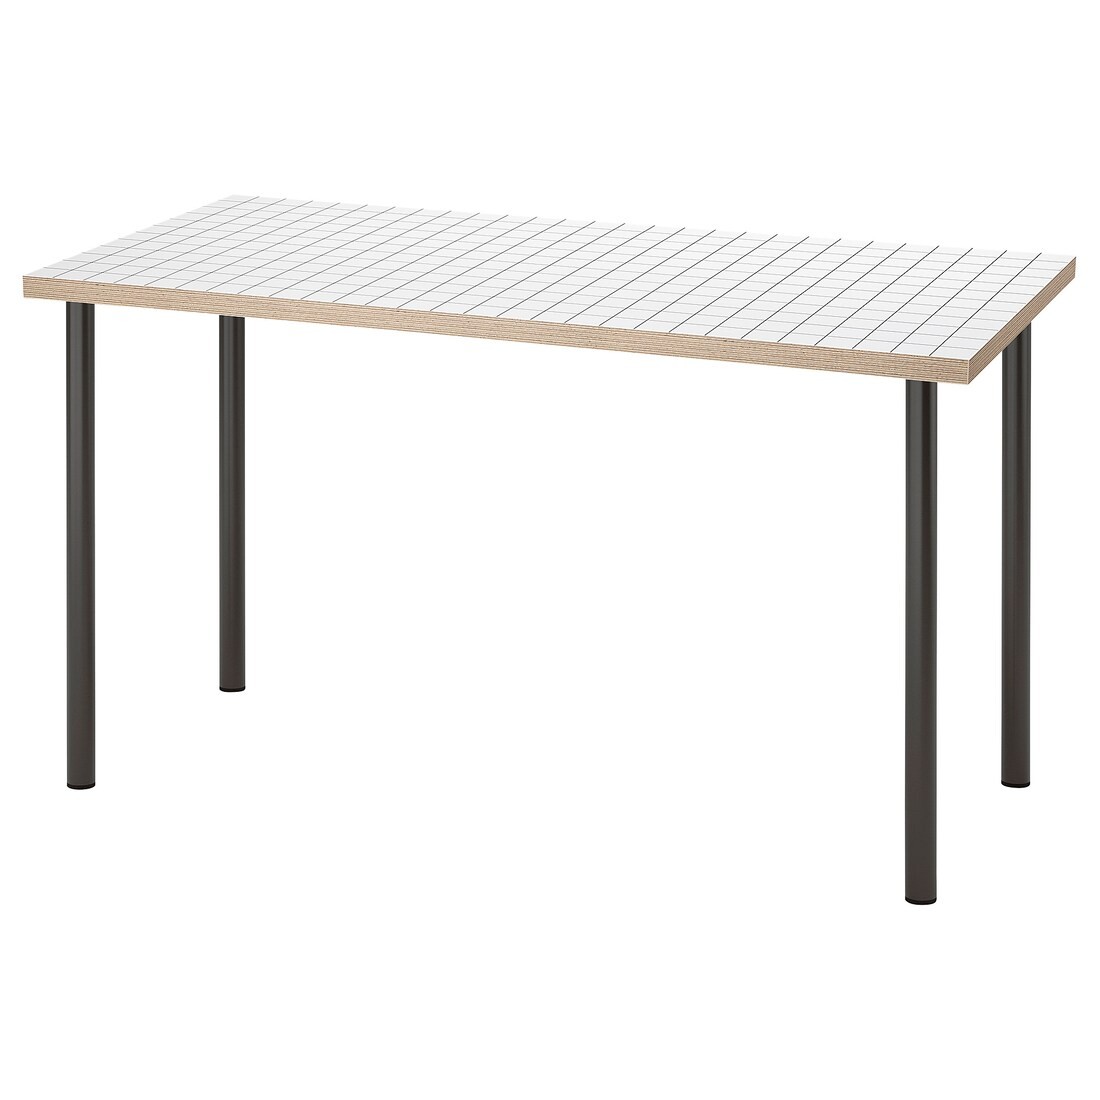 IKEA LAGKAPTEN ЛАГКАПТЕН / ADILS АДИЛЬС Письменный стол, белый антрацит / темно-серый, 140x60 см 99508429 995.084.29